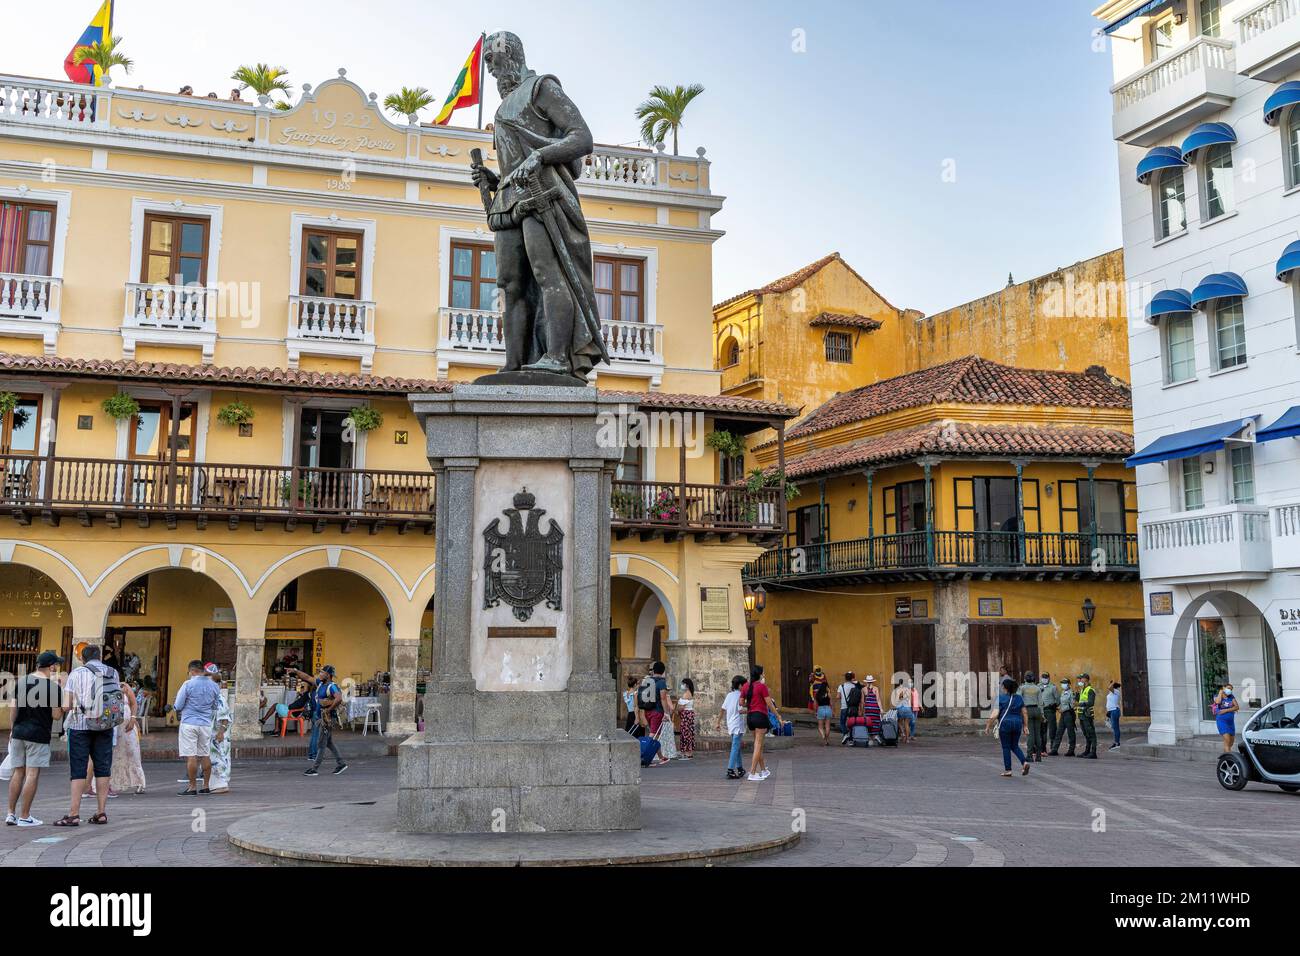 South America, Colombia, Departamento de Bolívar, Cartagena de Indias, Ciudad Amurallada, Statue of Pedro de Heredia on the Plaza de los Coches Stock Photo